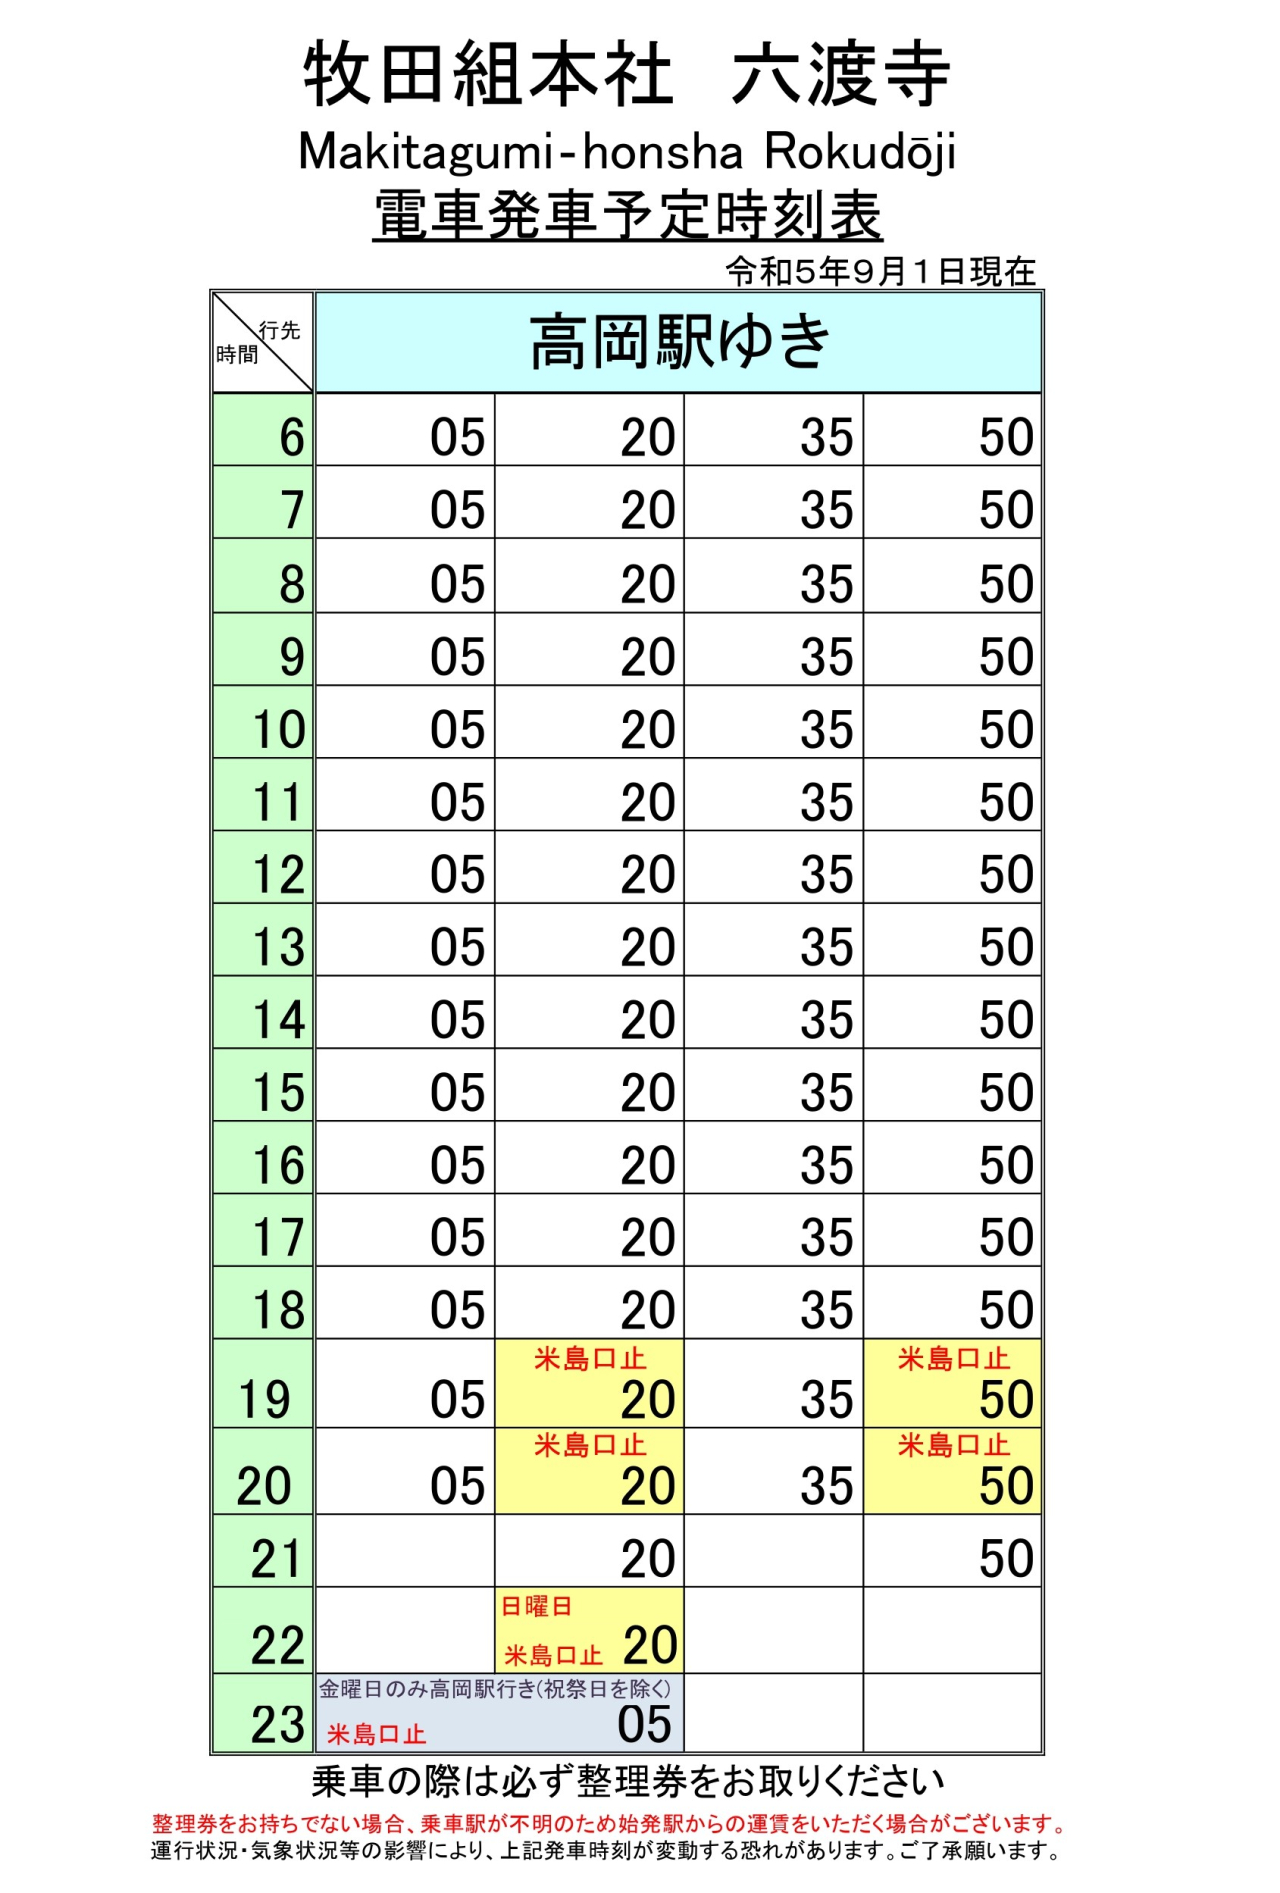 最新5.5.1改正各駅時刻表(六渡寺上り)_page-0001